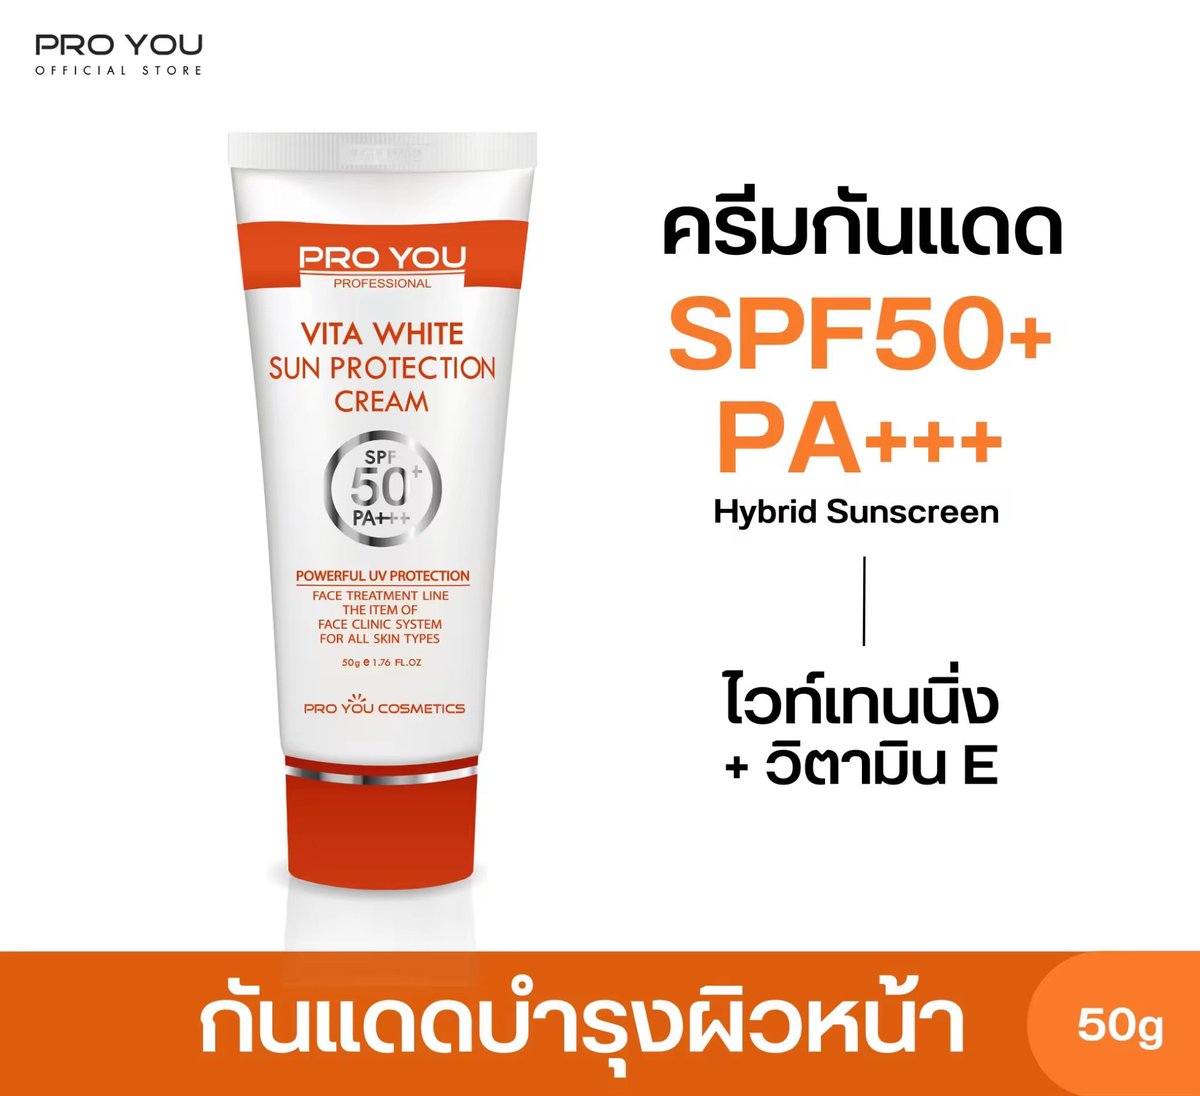 ของดี ราคาโดน ลองเข้าไปดูเลย!
ชื่อสินค้า:  Proyou Vita White Sun Protection Cream SPF50+/ PA+++ (50g) โปรยู สกินแคร์เกาหลี : ครีมกันแดดไวท์เทนนิ่งช่วยปรับผิวให้กระจ่างใส ปกป้องรังสี UVA และ UVB ด้วย SPF50+/ PA+++
ราคาสินค้า:  ฿750
ส่วนลดสินค้า:  ฿397.11
s.lazada.co.th/s.mFUMm?cc